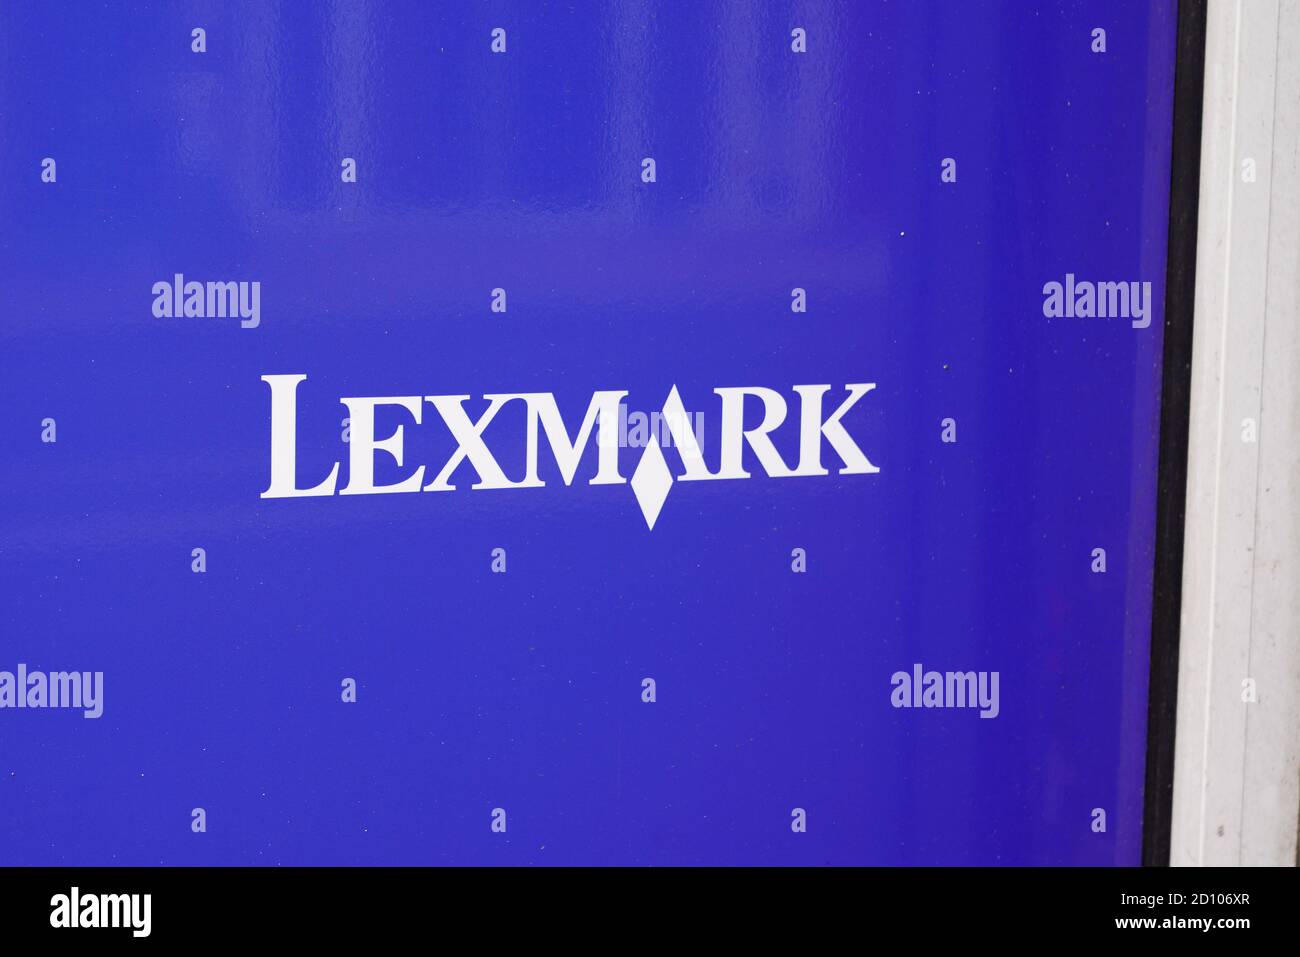 Bordeaux , Aquitaine / Francia - 10 01 2020 : logo Lexmark e segno di soluzioni e tecnologie innovative di imaging per aiutare i clienti nel mondo prin Foto Stock